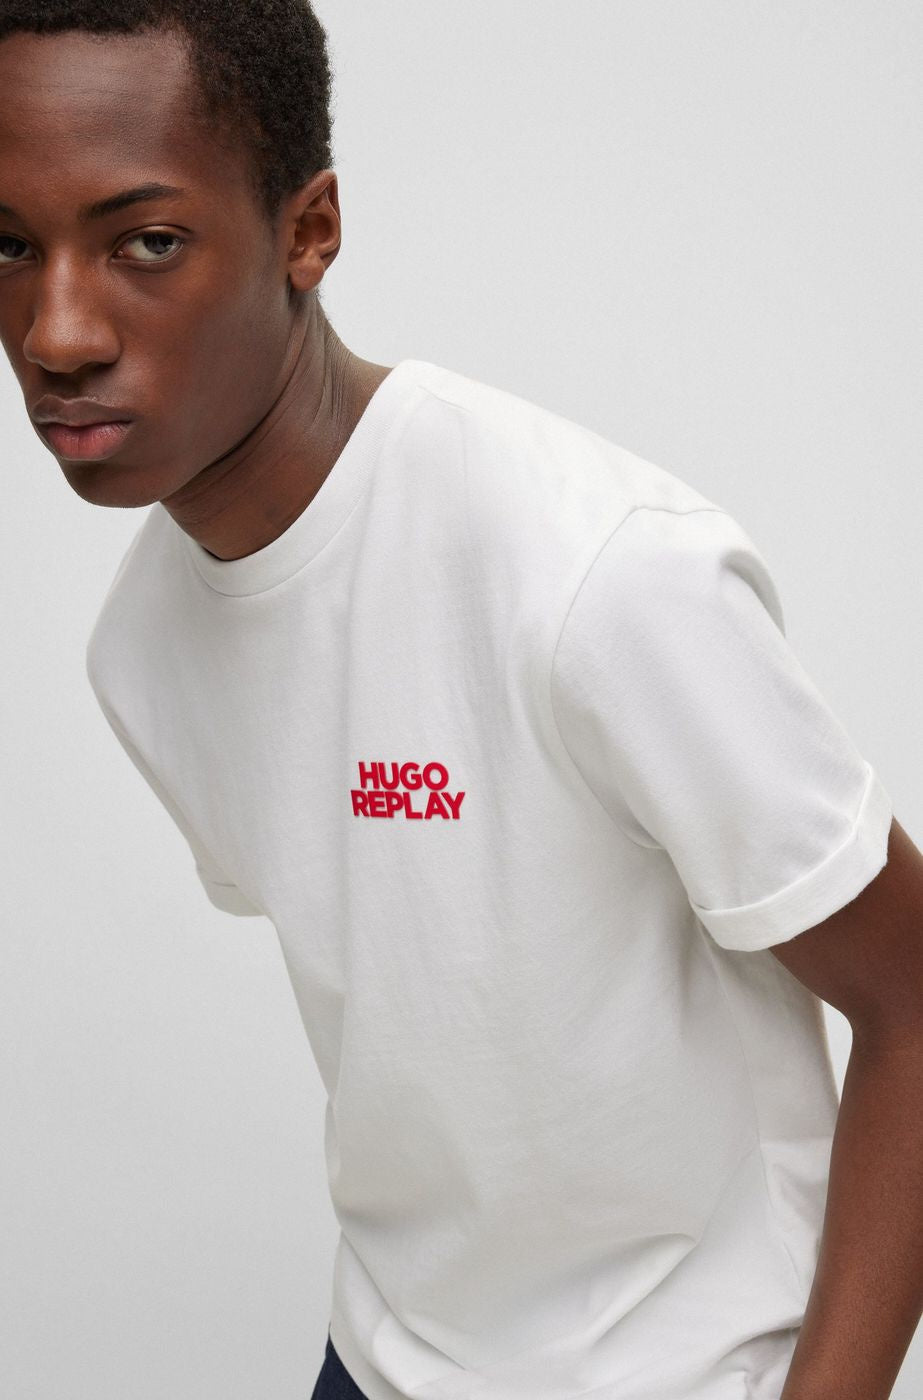 T-shirt HUGO BOSS x Replay - Crush Store